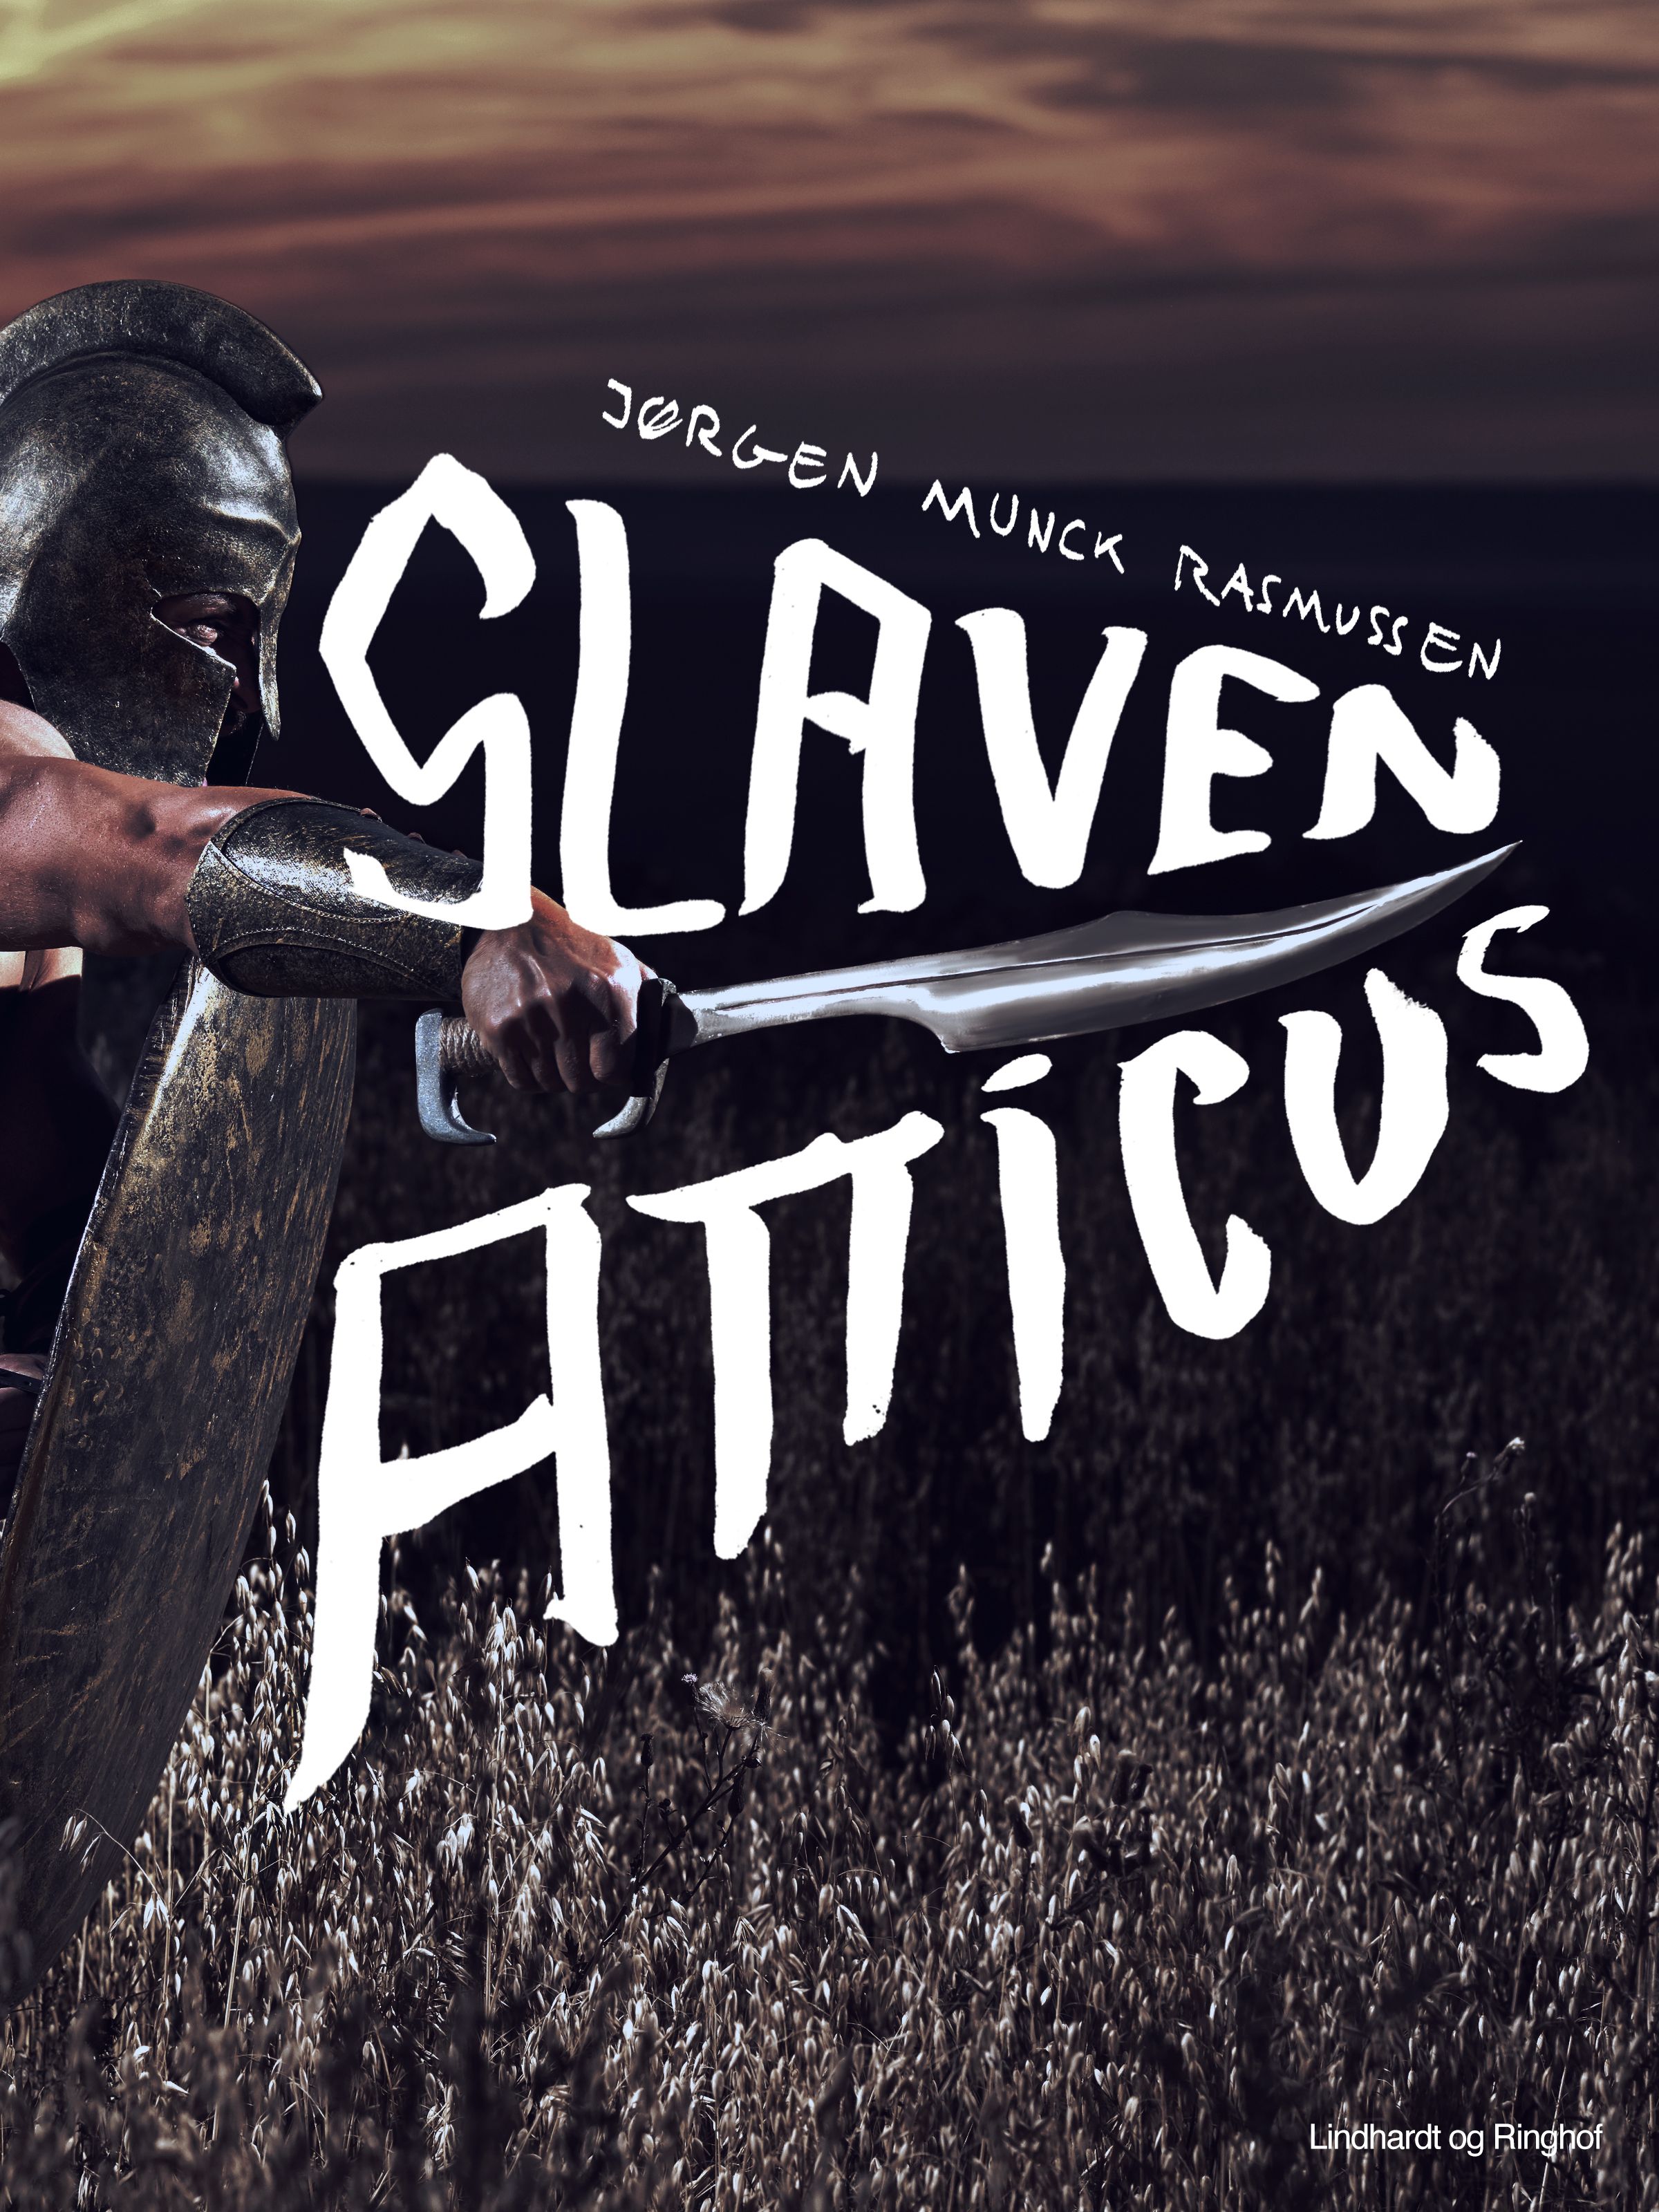 Slaven Atticus, e-bok av Jørgen Munck Rasmussen